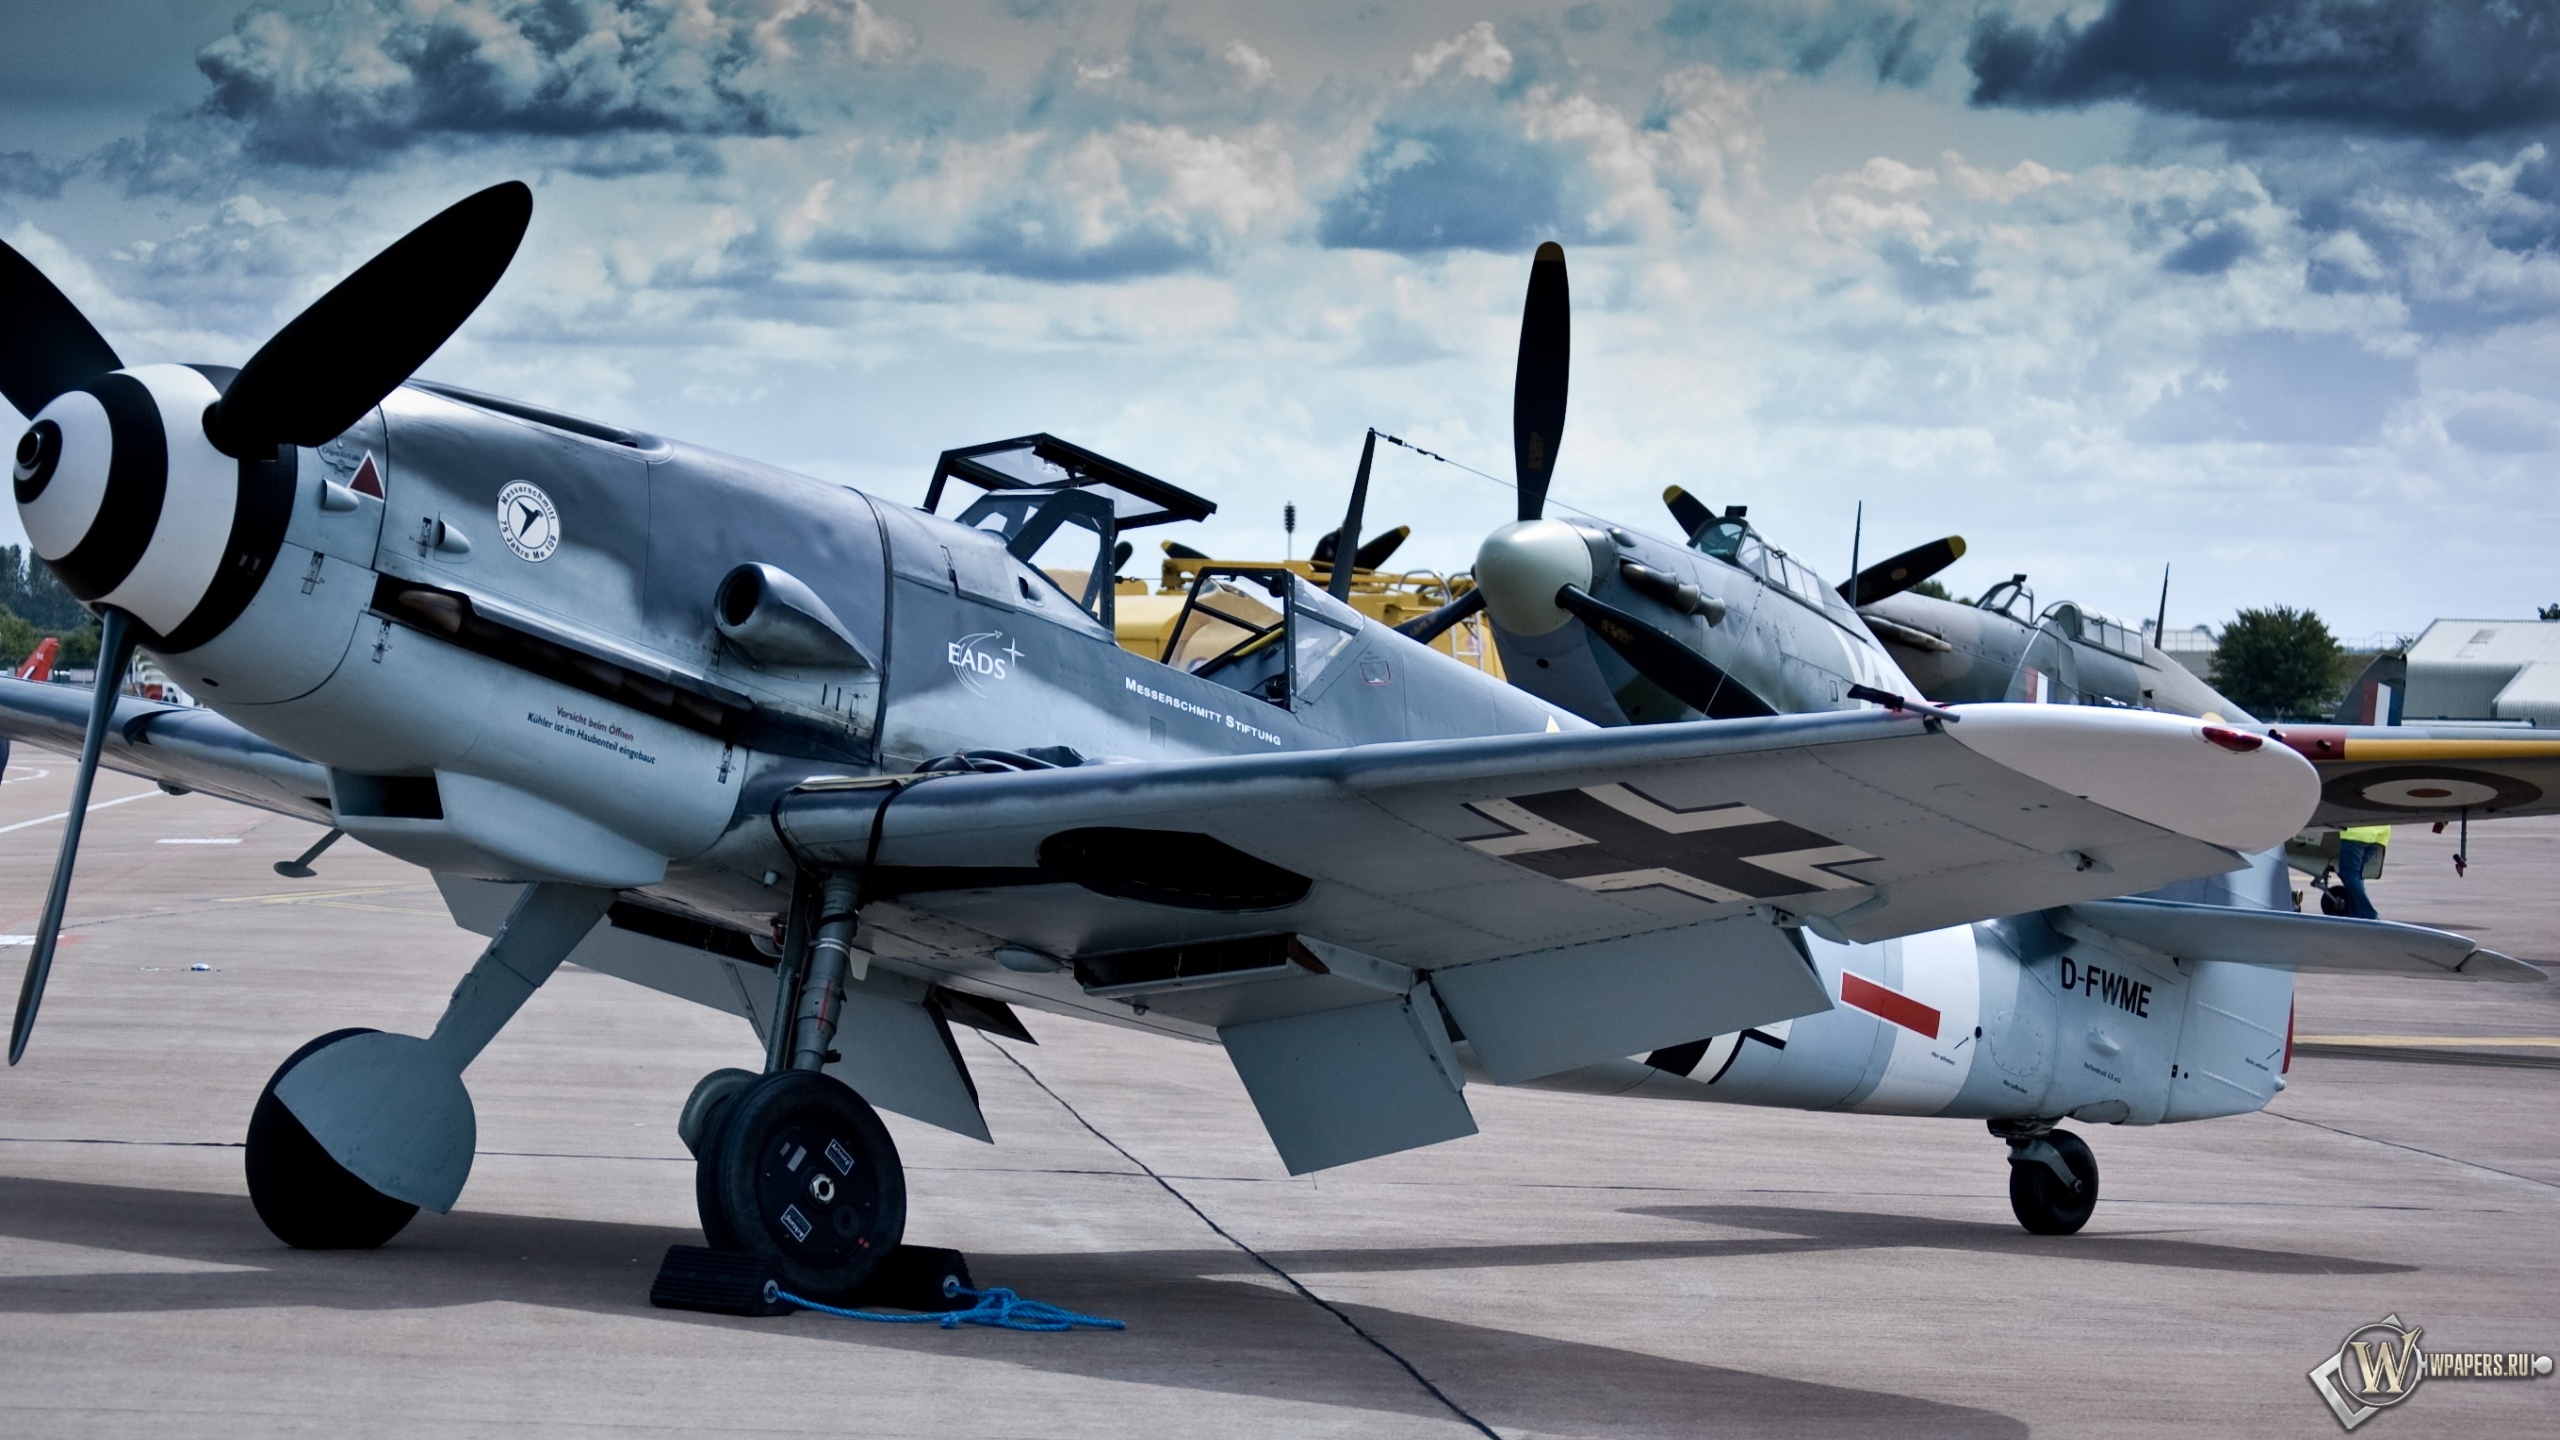 Messerschmitt Bf-109 (Me-109) 2560x1440